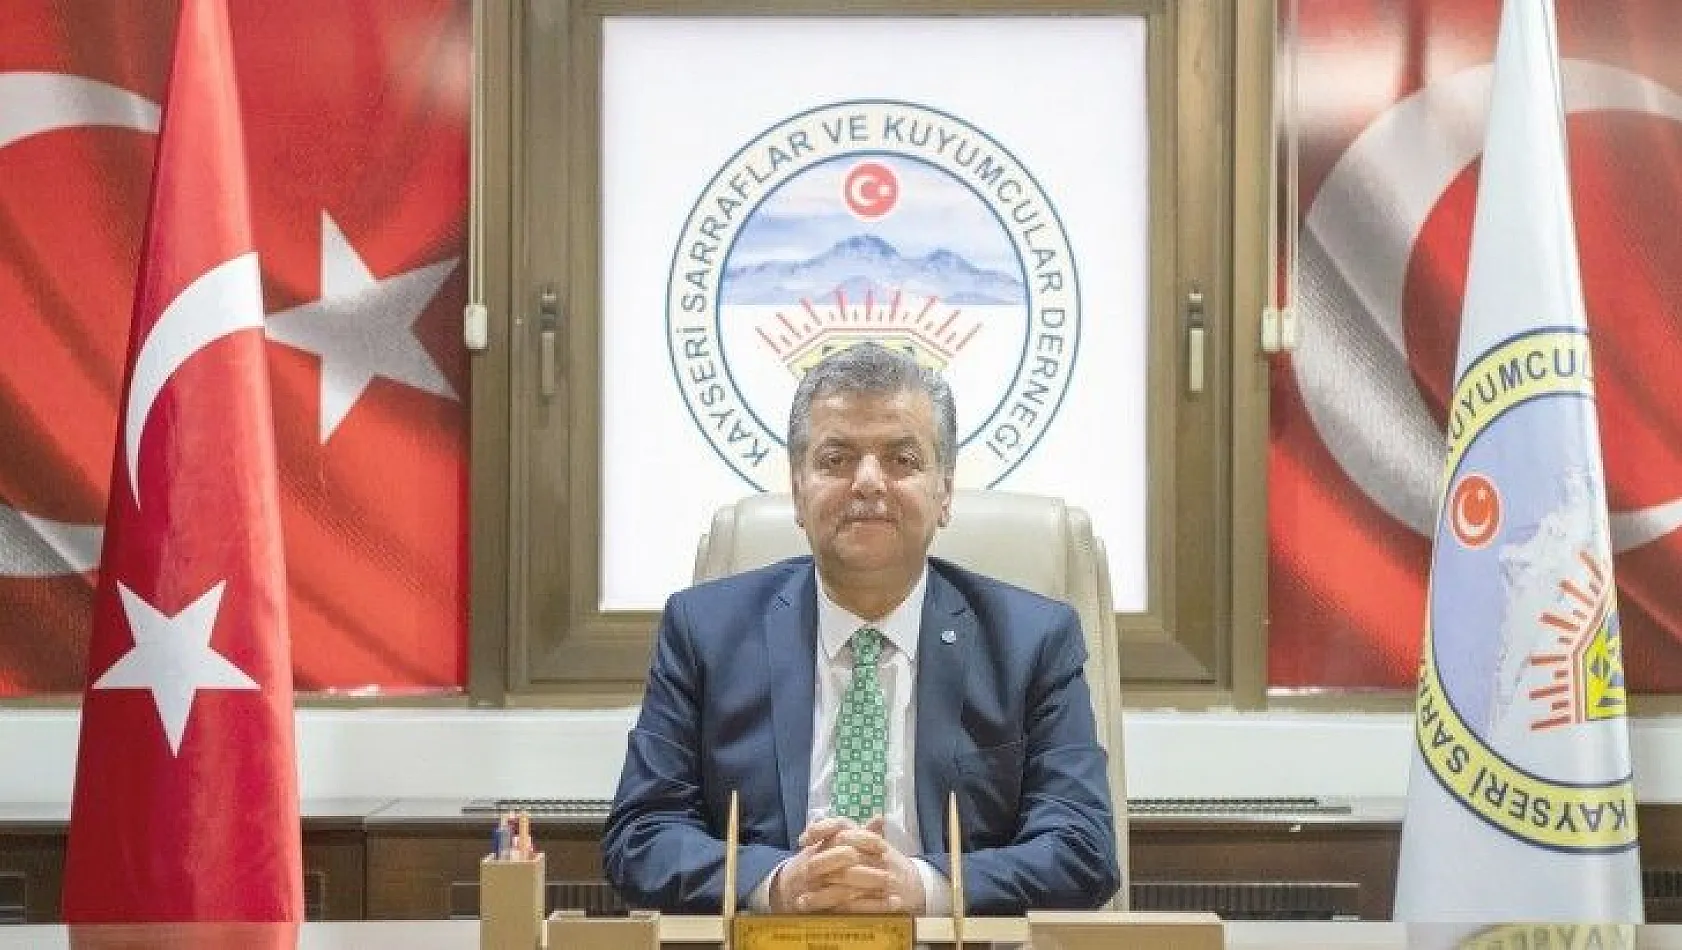 Kayseri Sarraflar ve Kuyumcular Derneği Başkanı Adnan İncetoprak kuyumcuları uyardı